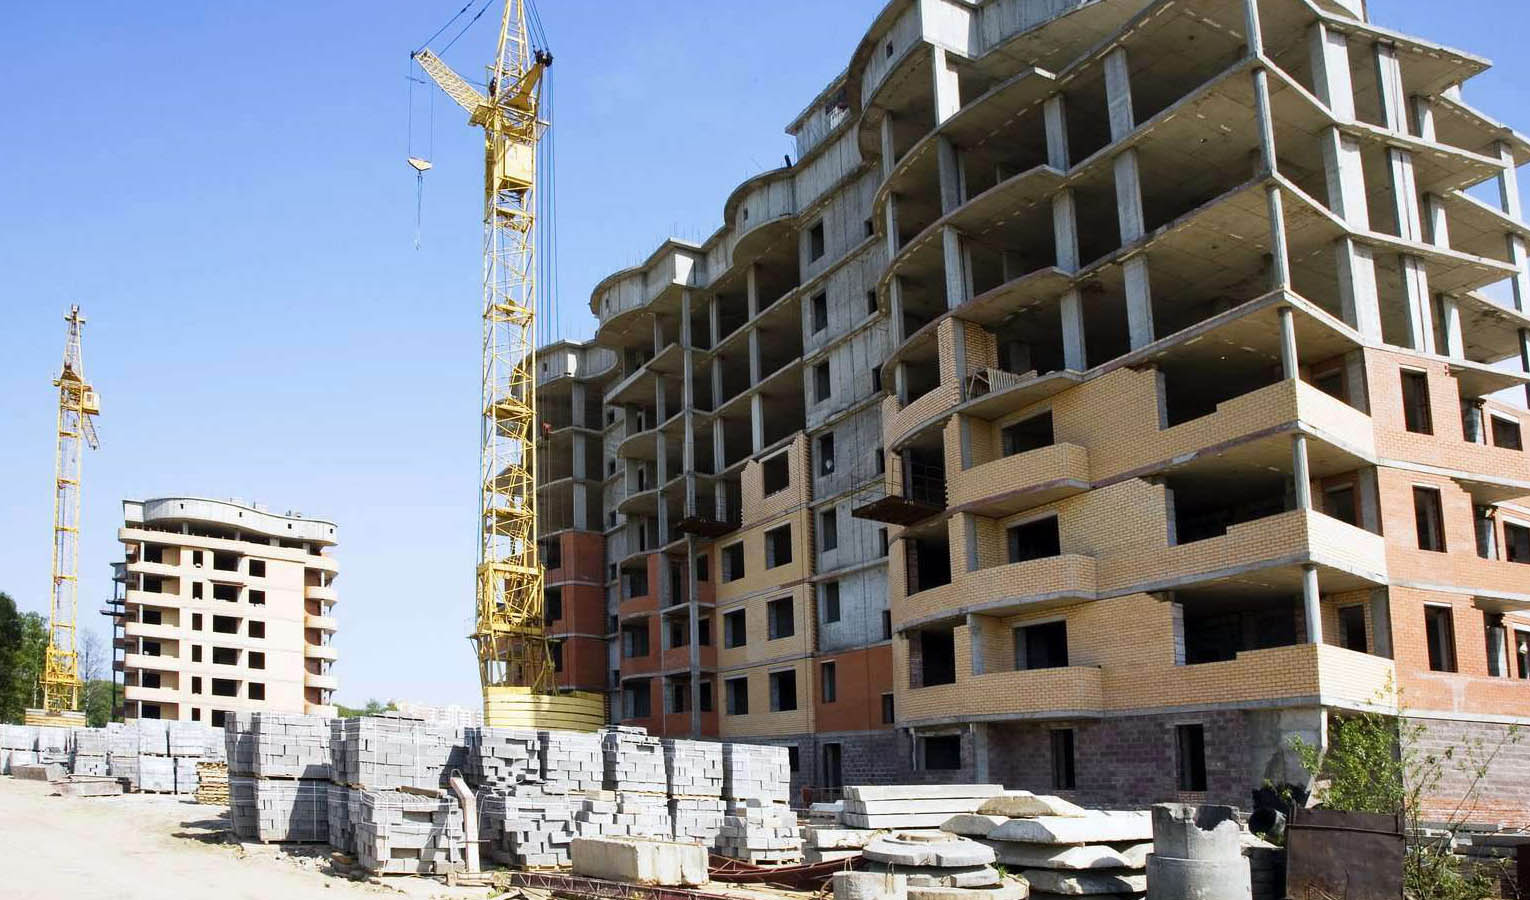 هزینه ساخت هر مترمربع ساختمان از ۱.۶ تا ۳.۳میلیون تومان تعیین شد